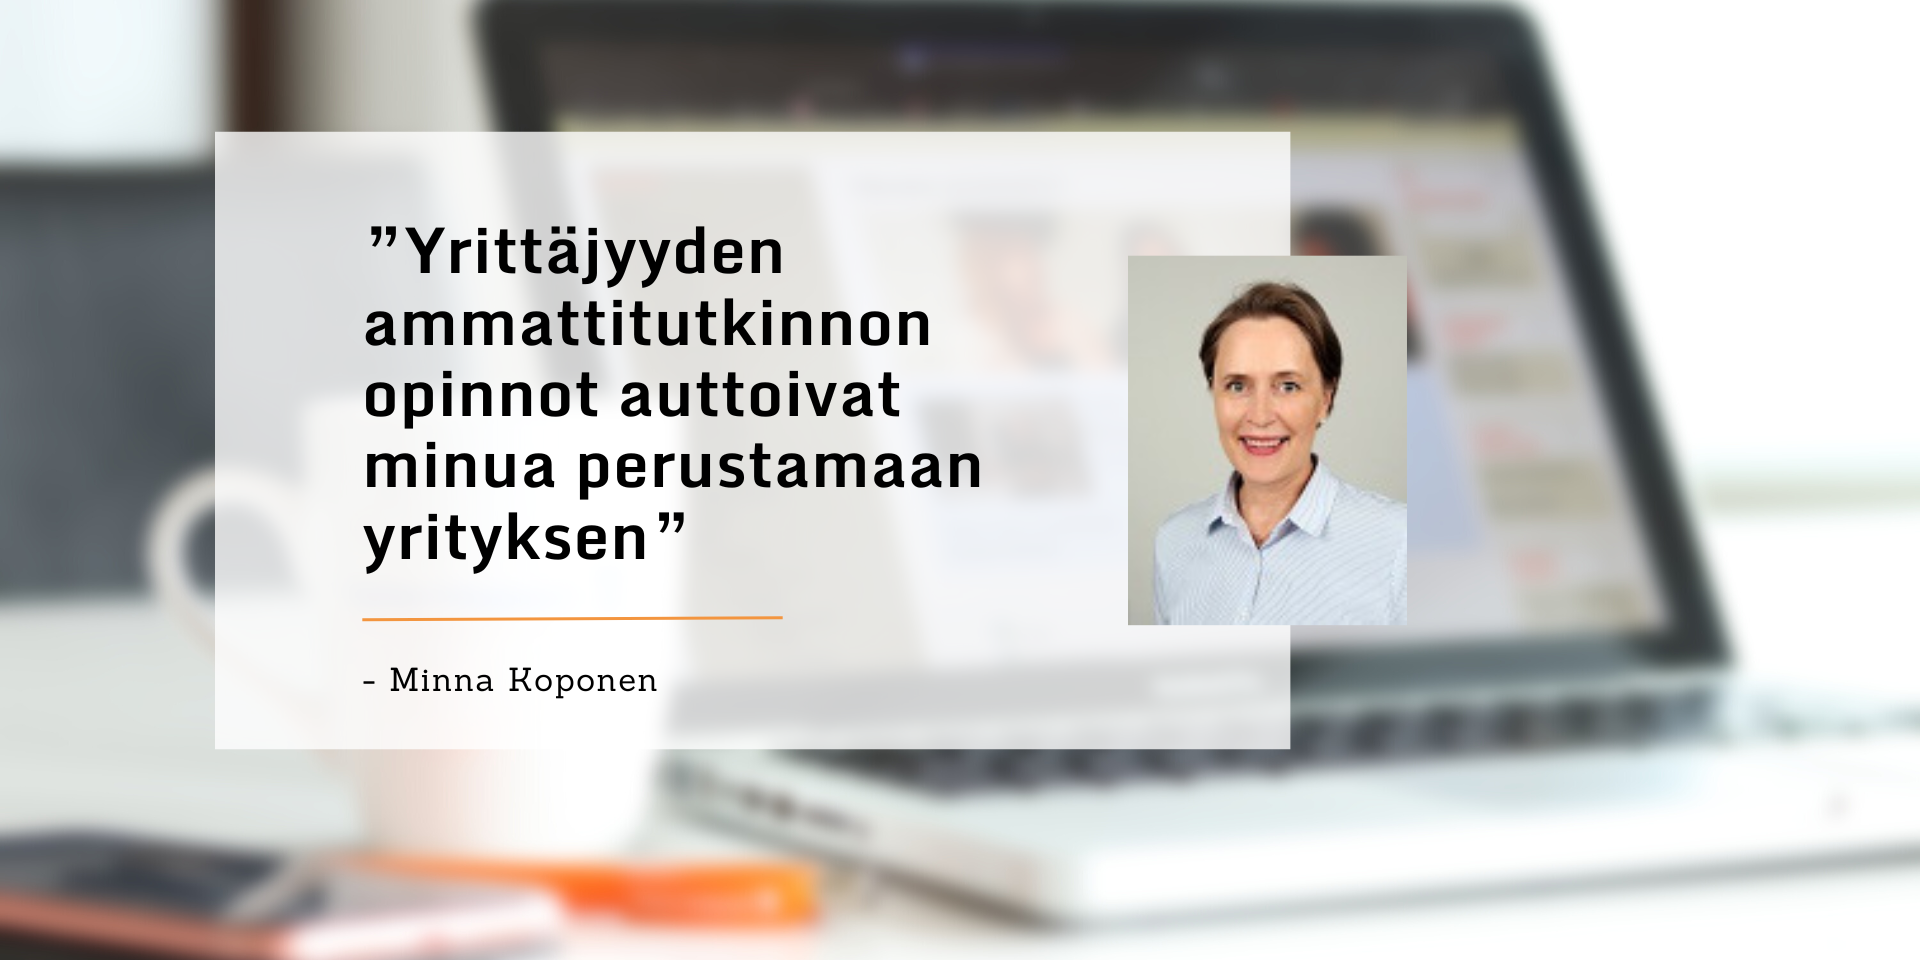 Yrittäjyyden ammattitutkinnon opinnot auttoivat minua perustamaan yrityksen, kertoo Minna Koponen.